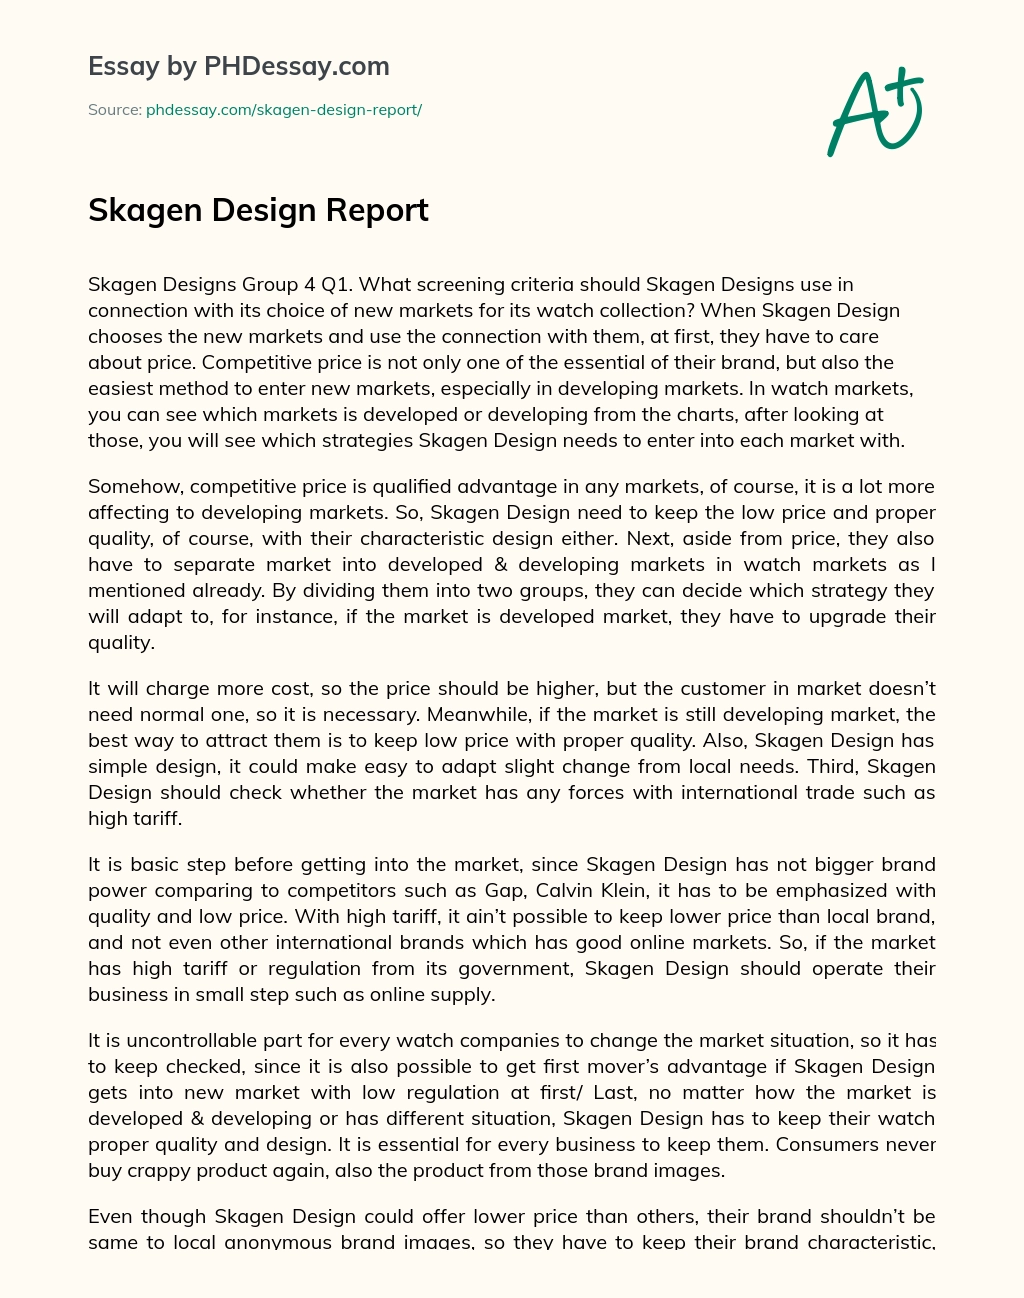 Skagen Design Report essay